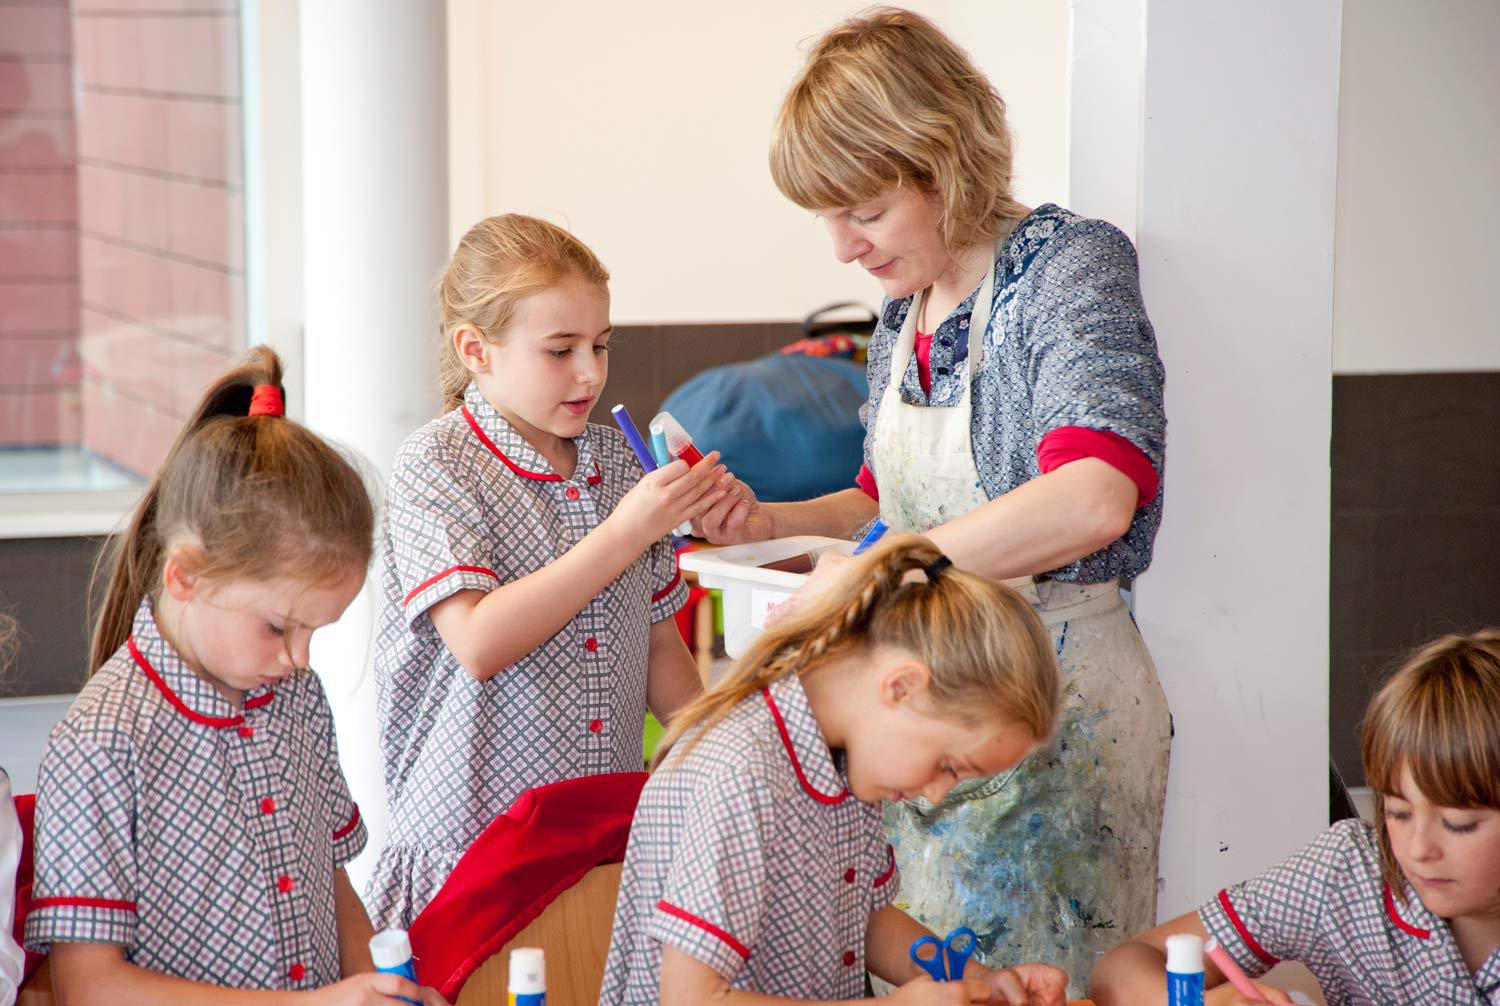 Children in school uniform working with an artist